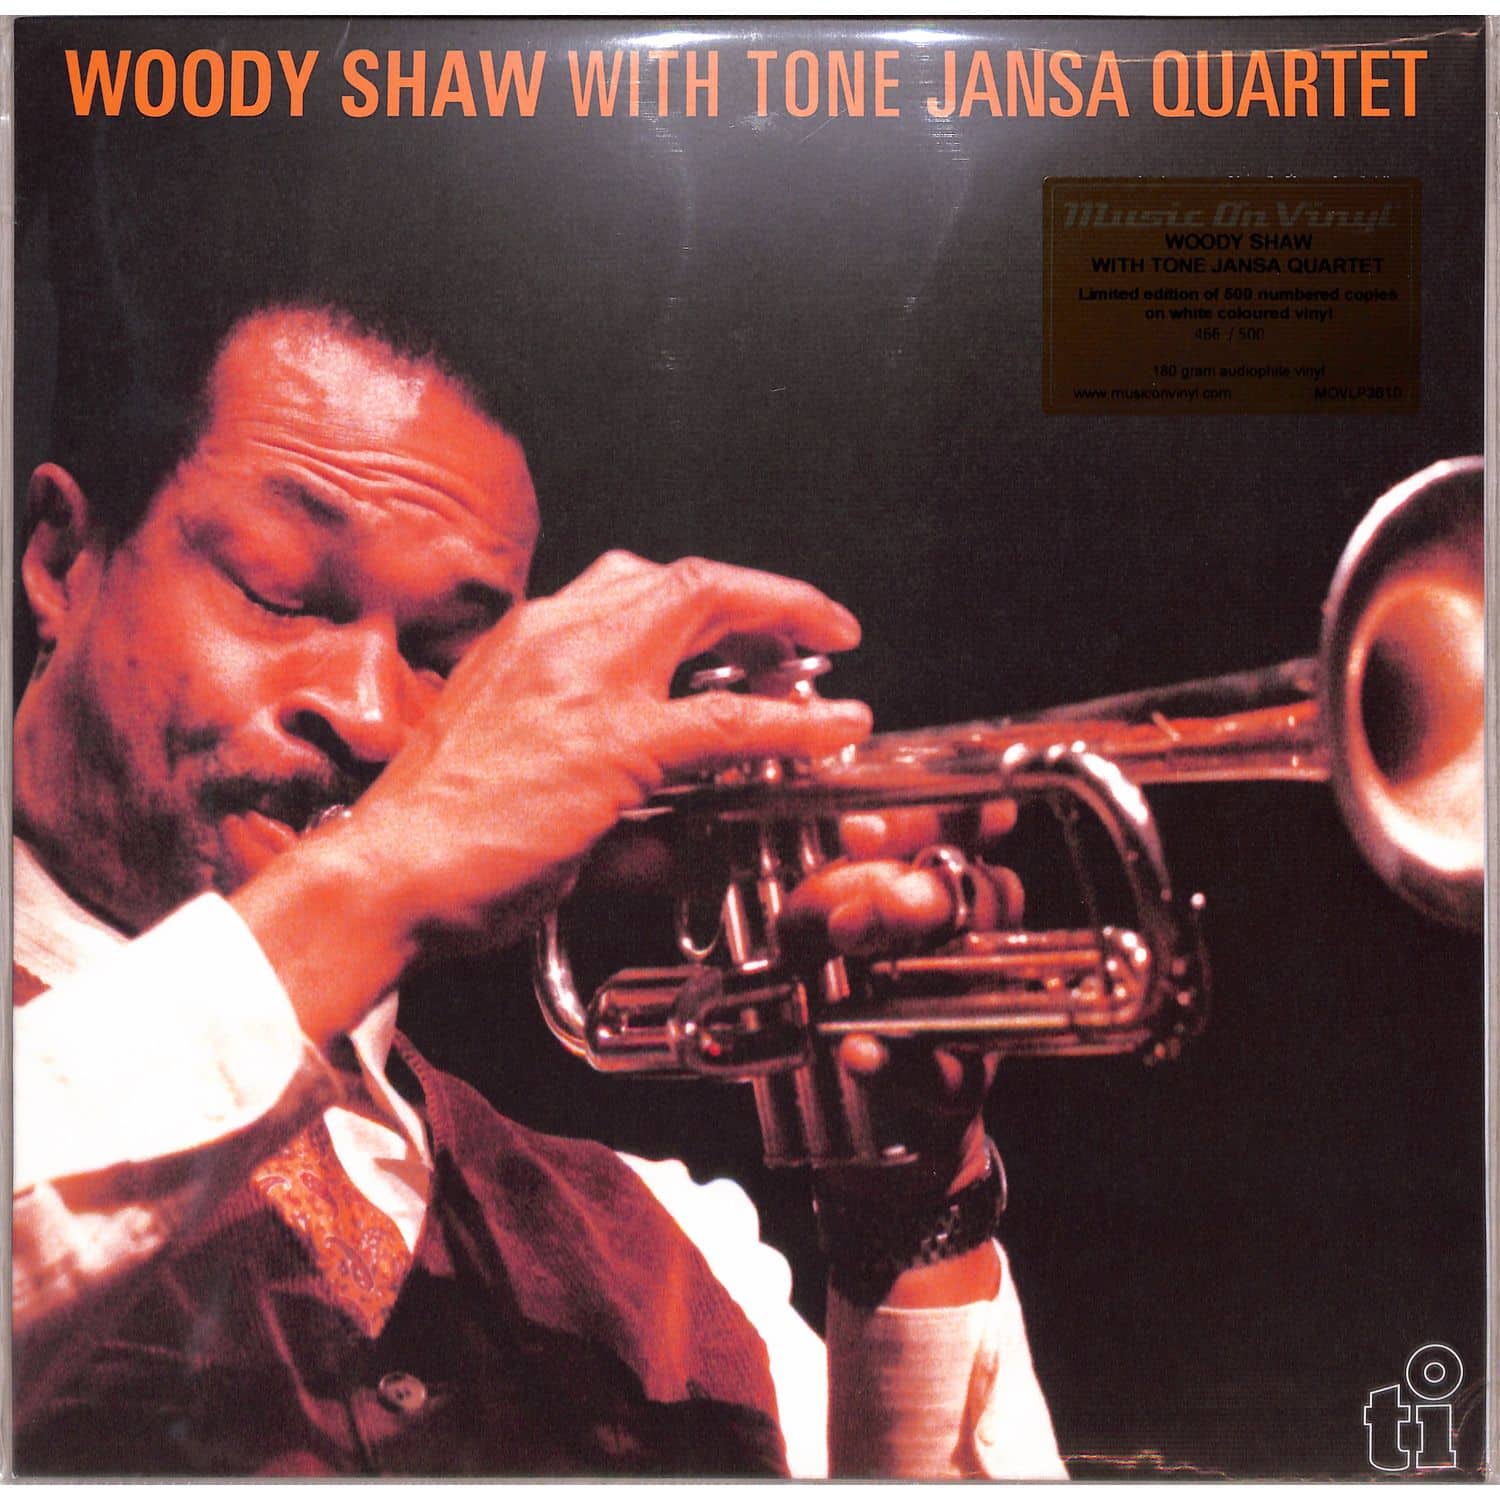 Woody with Tone Jansa Quartet Shaw - WOODY SHAW WITH TONE JANSA QUARTET 